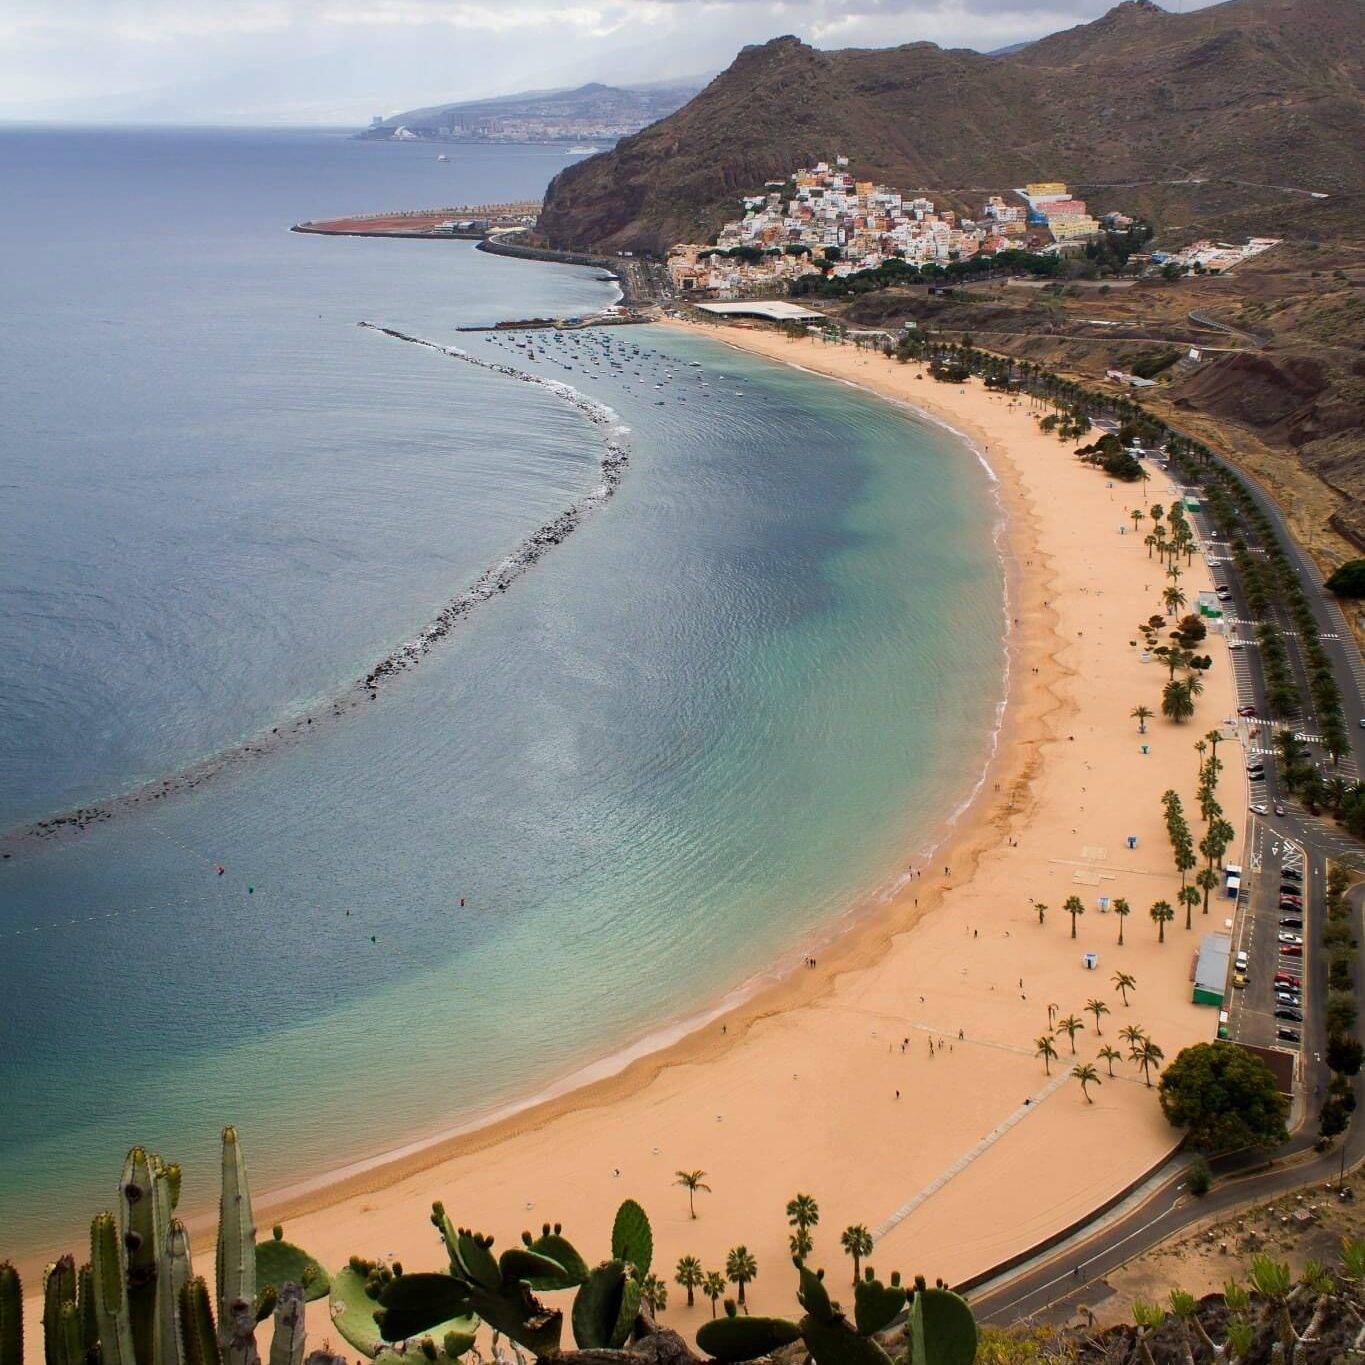 Playa de las Teresitas, Santa Cruz de Tenerife